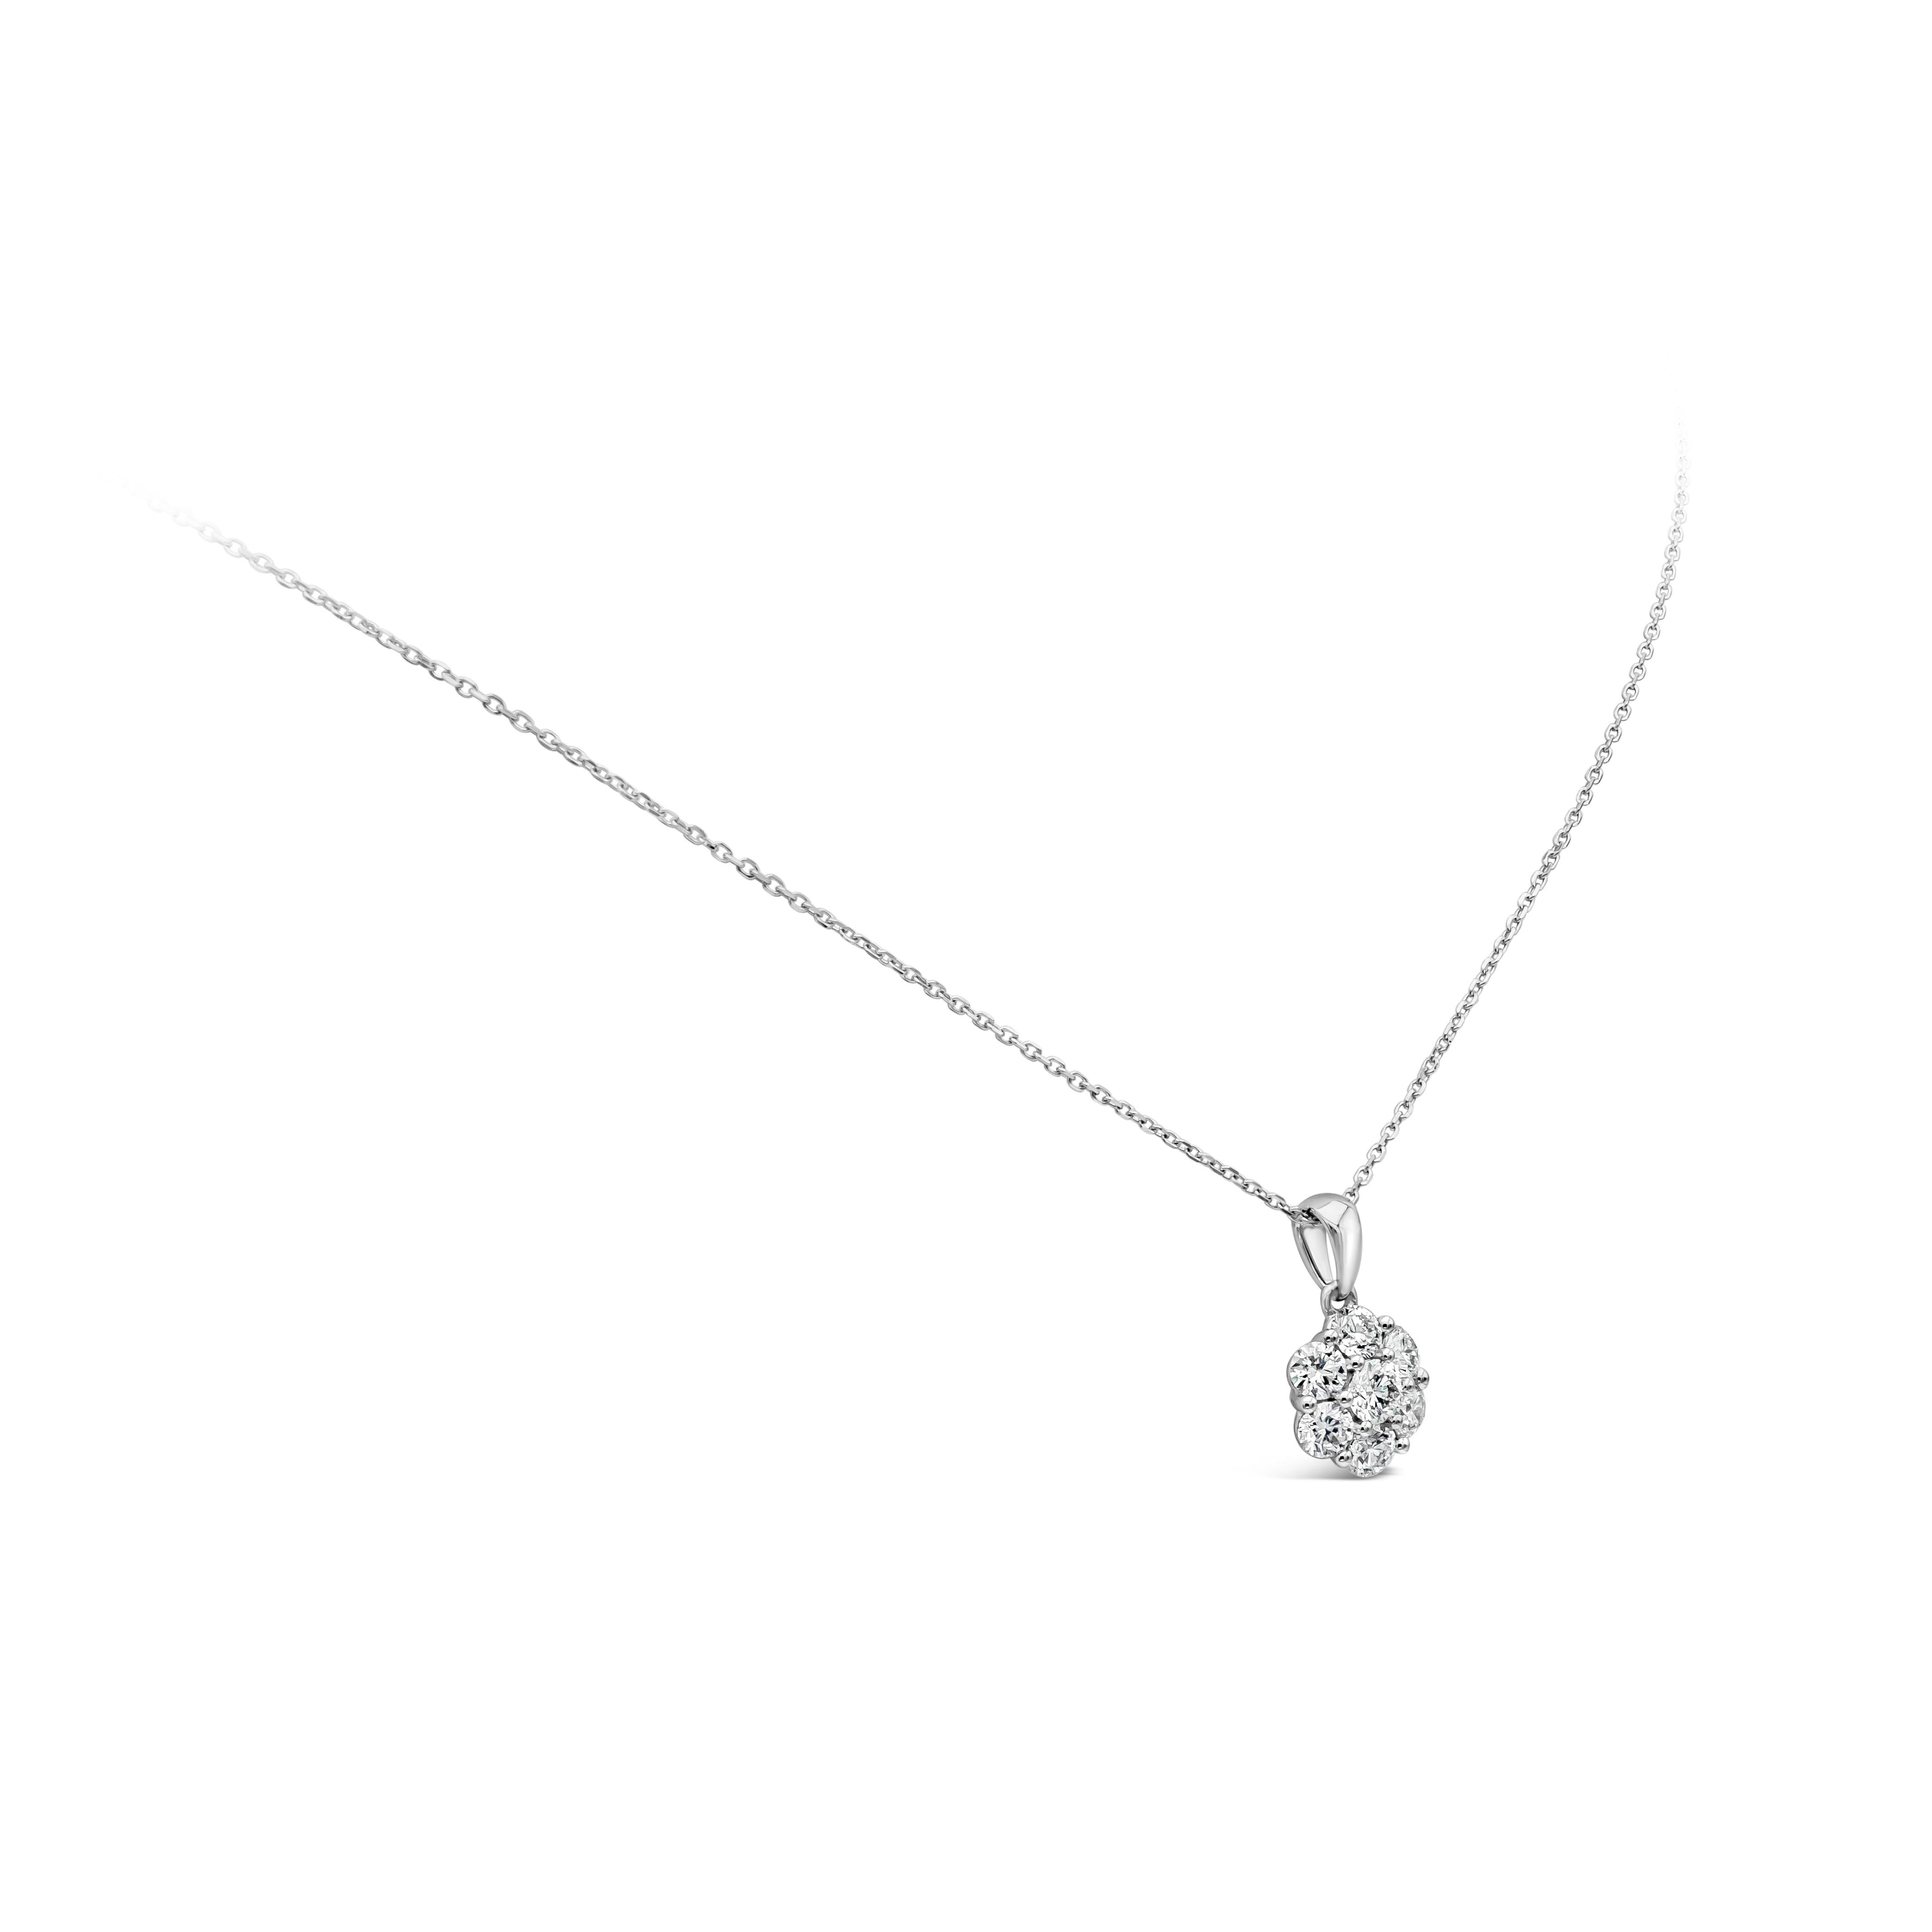 Un collier pendentif simple mais magnifique qui met en valeur une grappe de 7 diamants ronds brillants, disposés en forme de fleur, en or blanc 18 carats. Les diamants pèsent 1 carat au total et sont de couleur G et de pureté VS-SI. Fabriqué en or